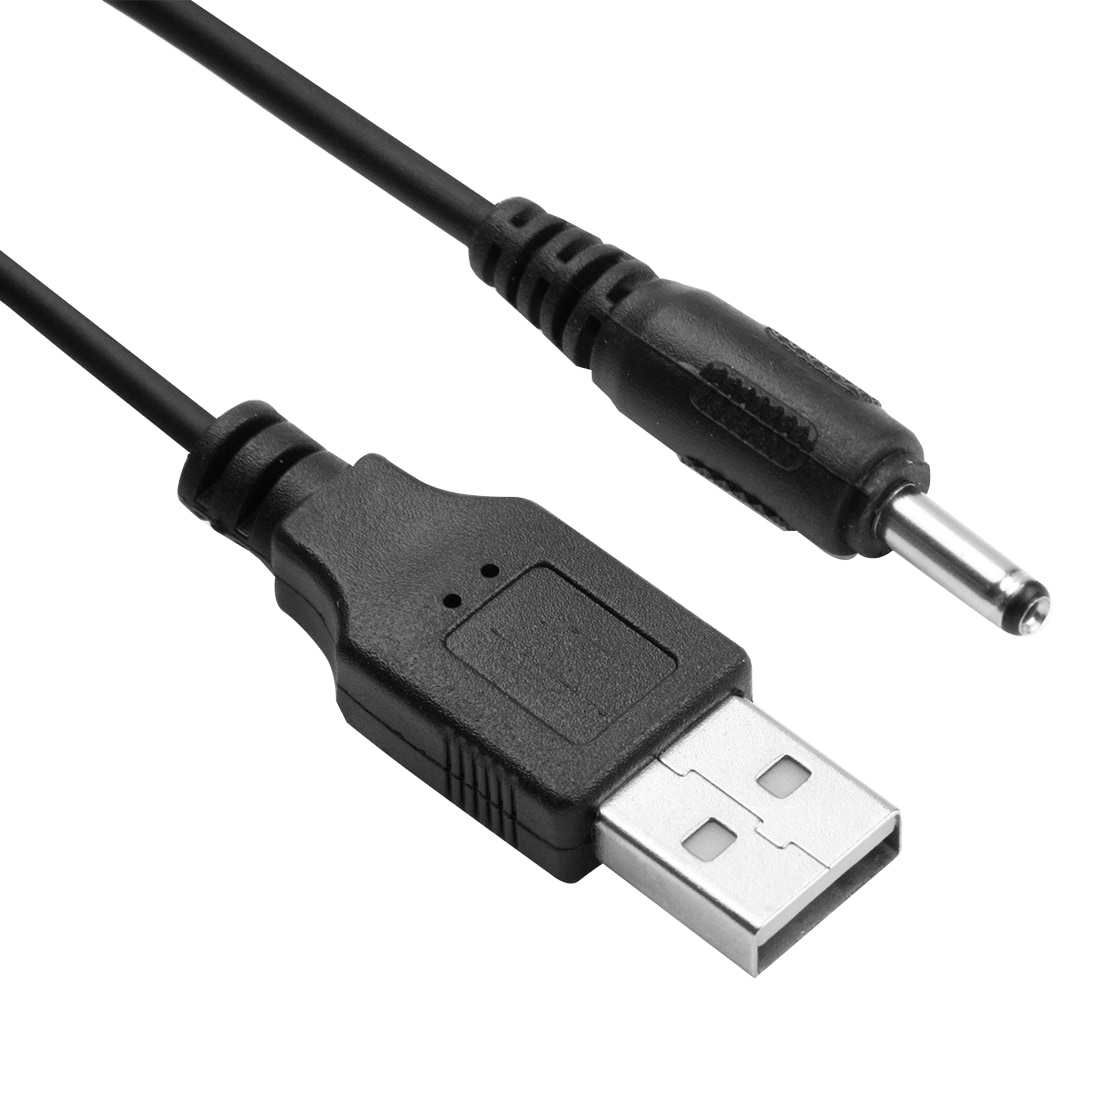 USB kabel met stroomvoorziening, 3,5mm ronde plug